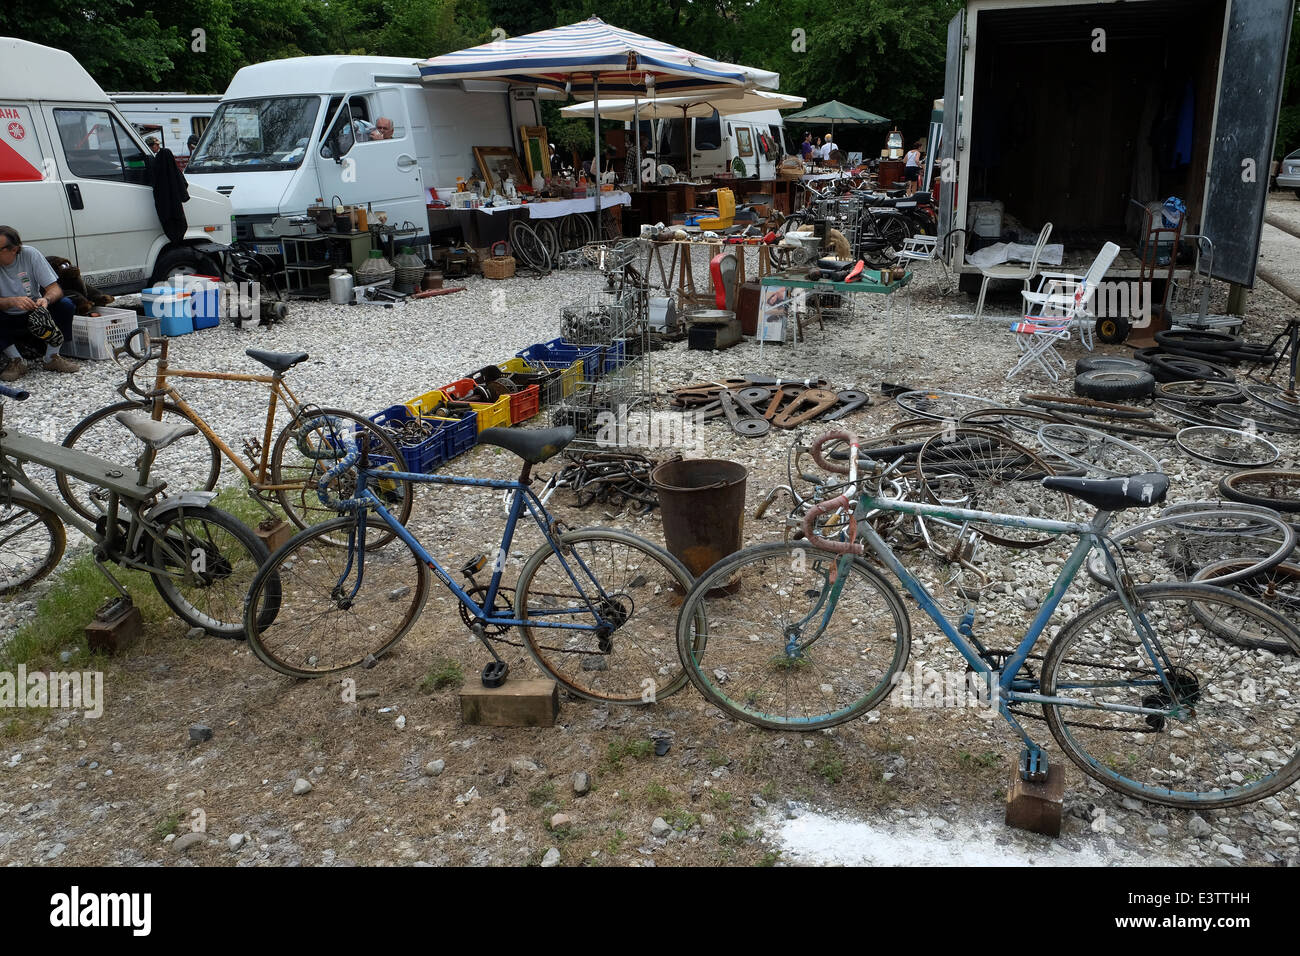 Strada del mercato di Stellata,vecchia bicicletta, Bondeno,Ferrara,Italia Foto Stock